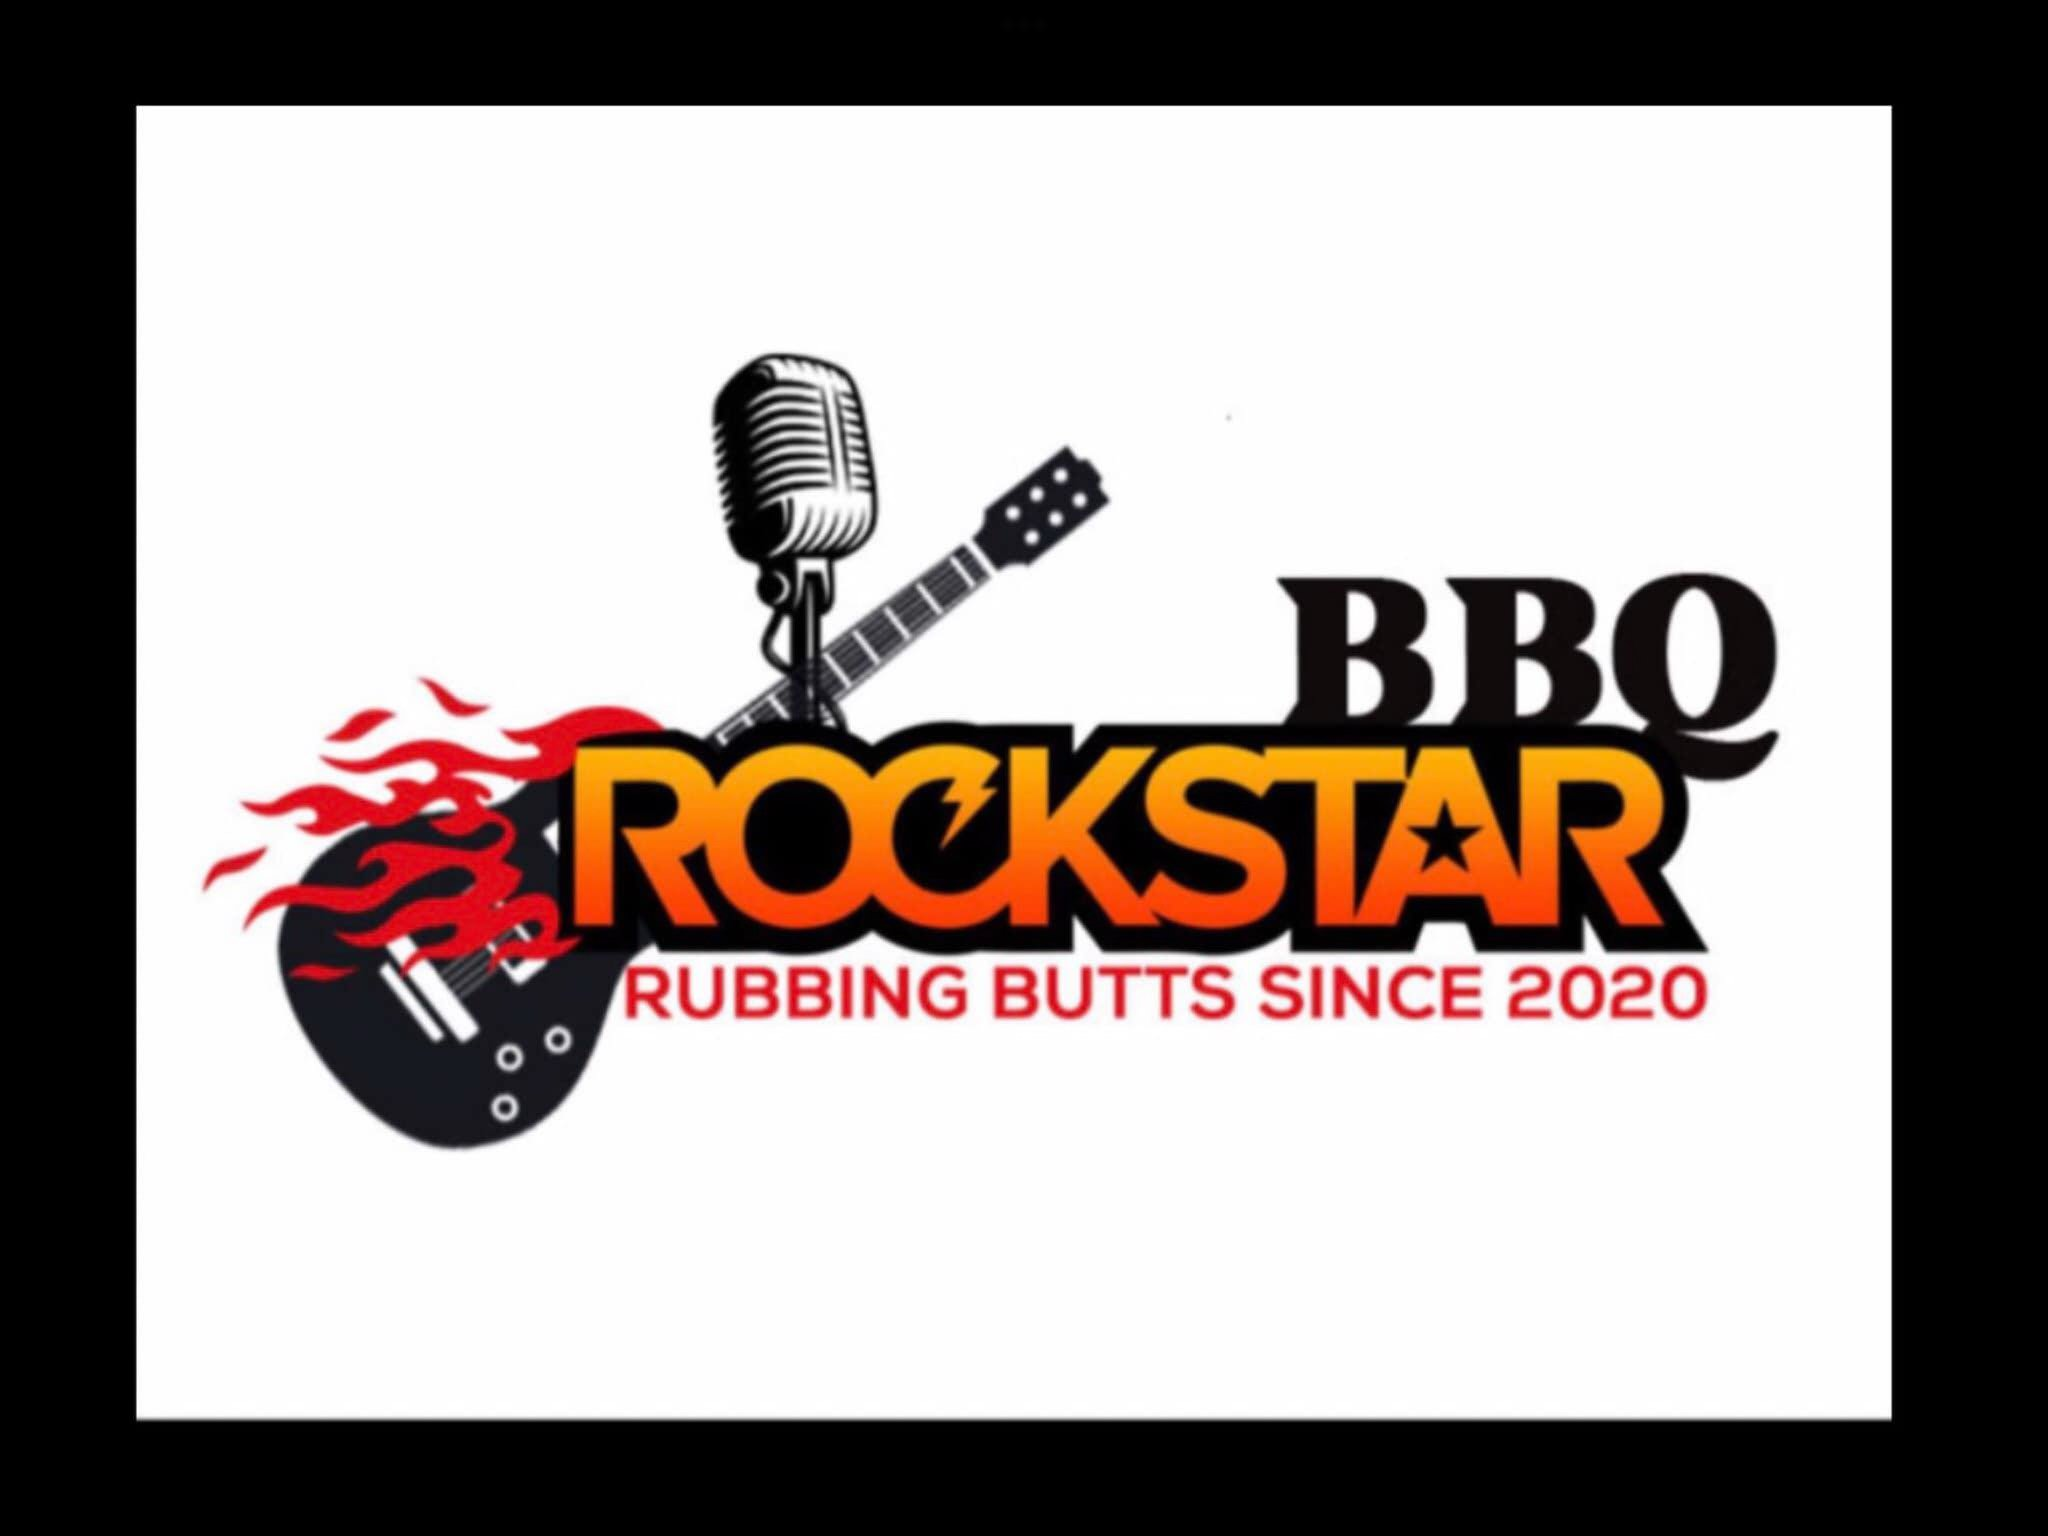  ROCKSTAR BBQ RUBBING BUTTS SINCE 2020